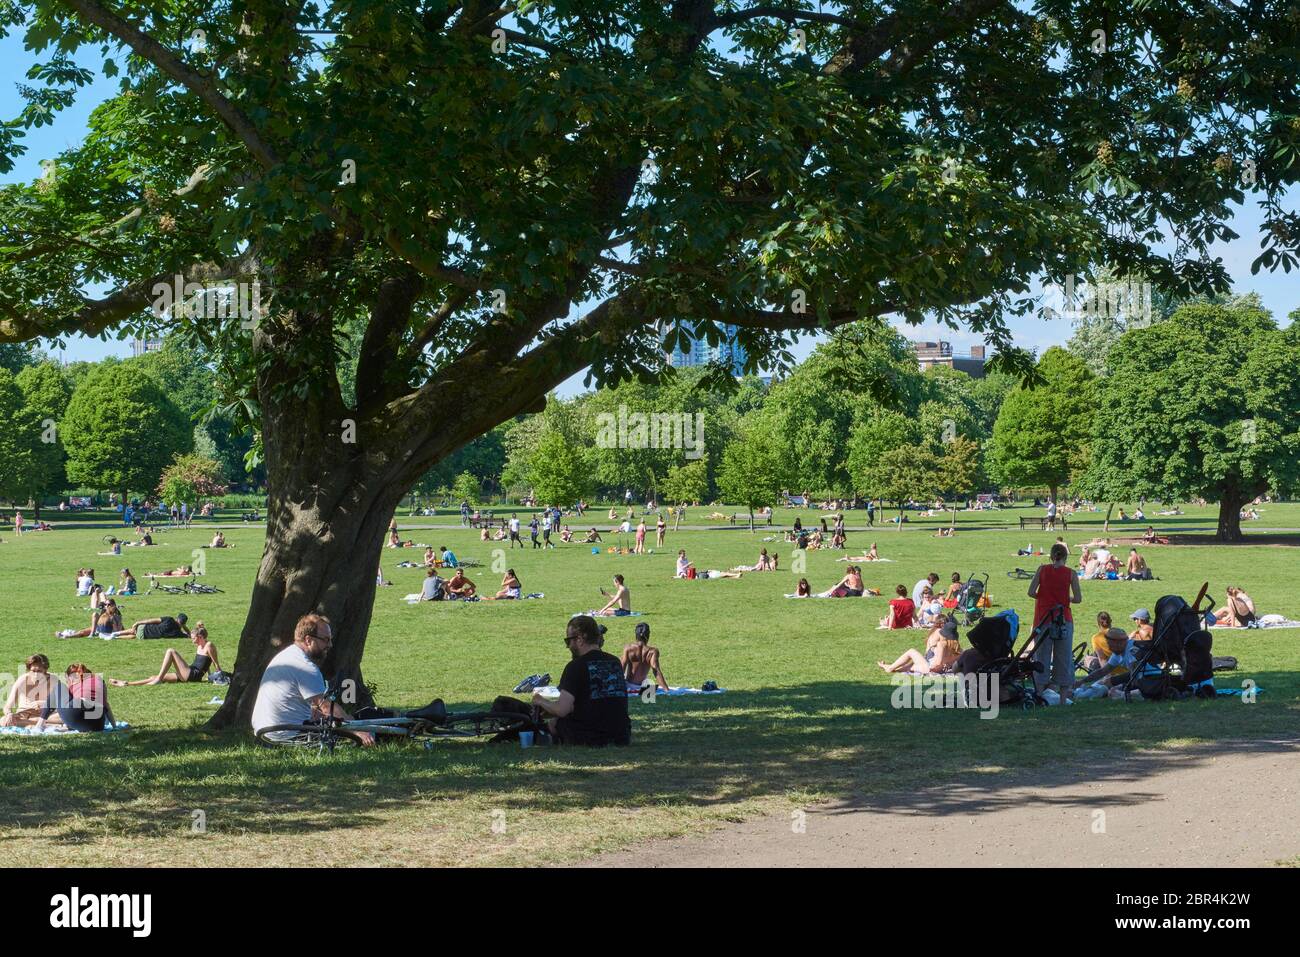 Multitudes en el parque Clisvendido, Stoke Newington, Londres, Reino Unido, durante el cierre, en un día caluroso el 20 de mayo de 2020 Foto de stock